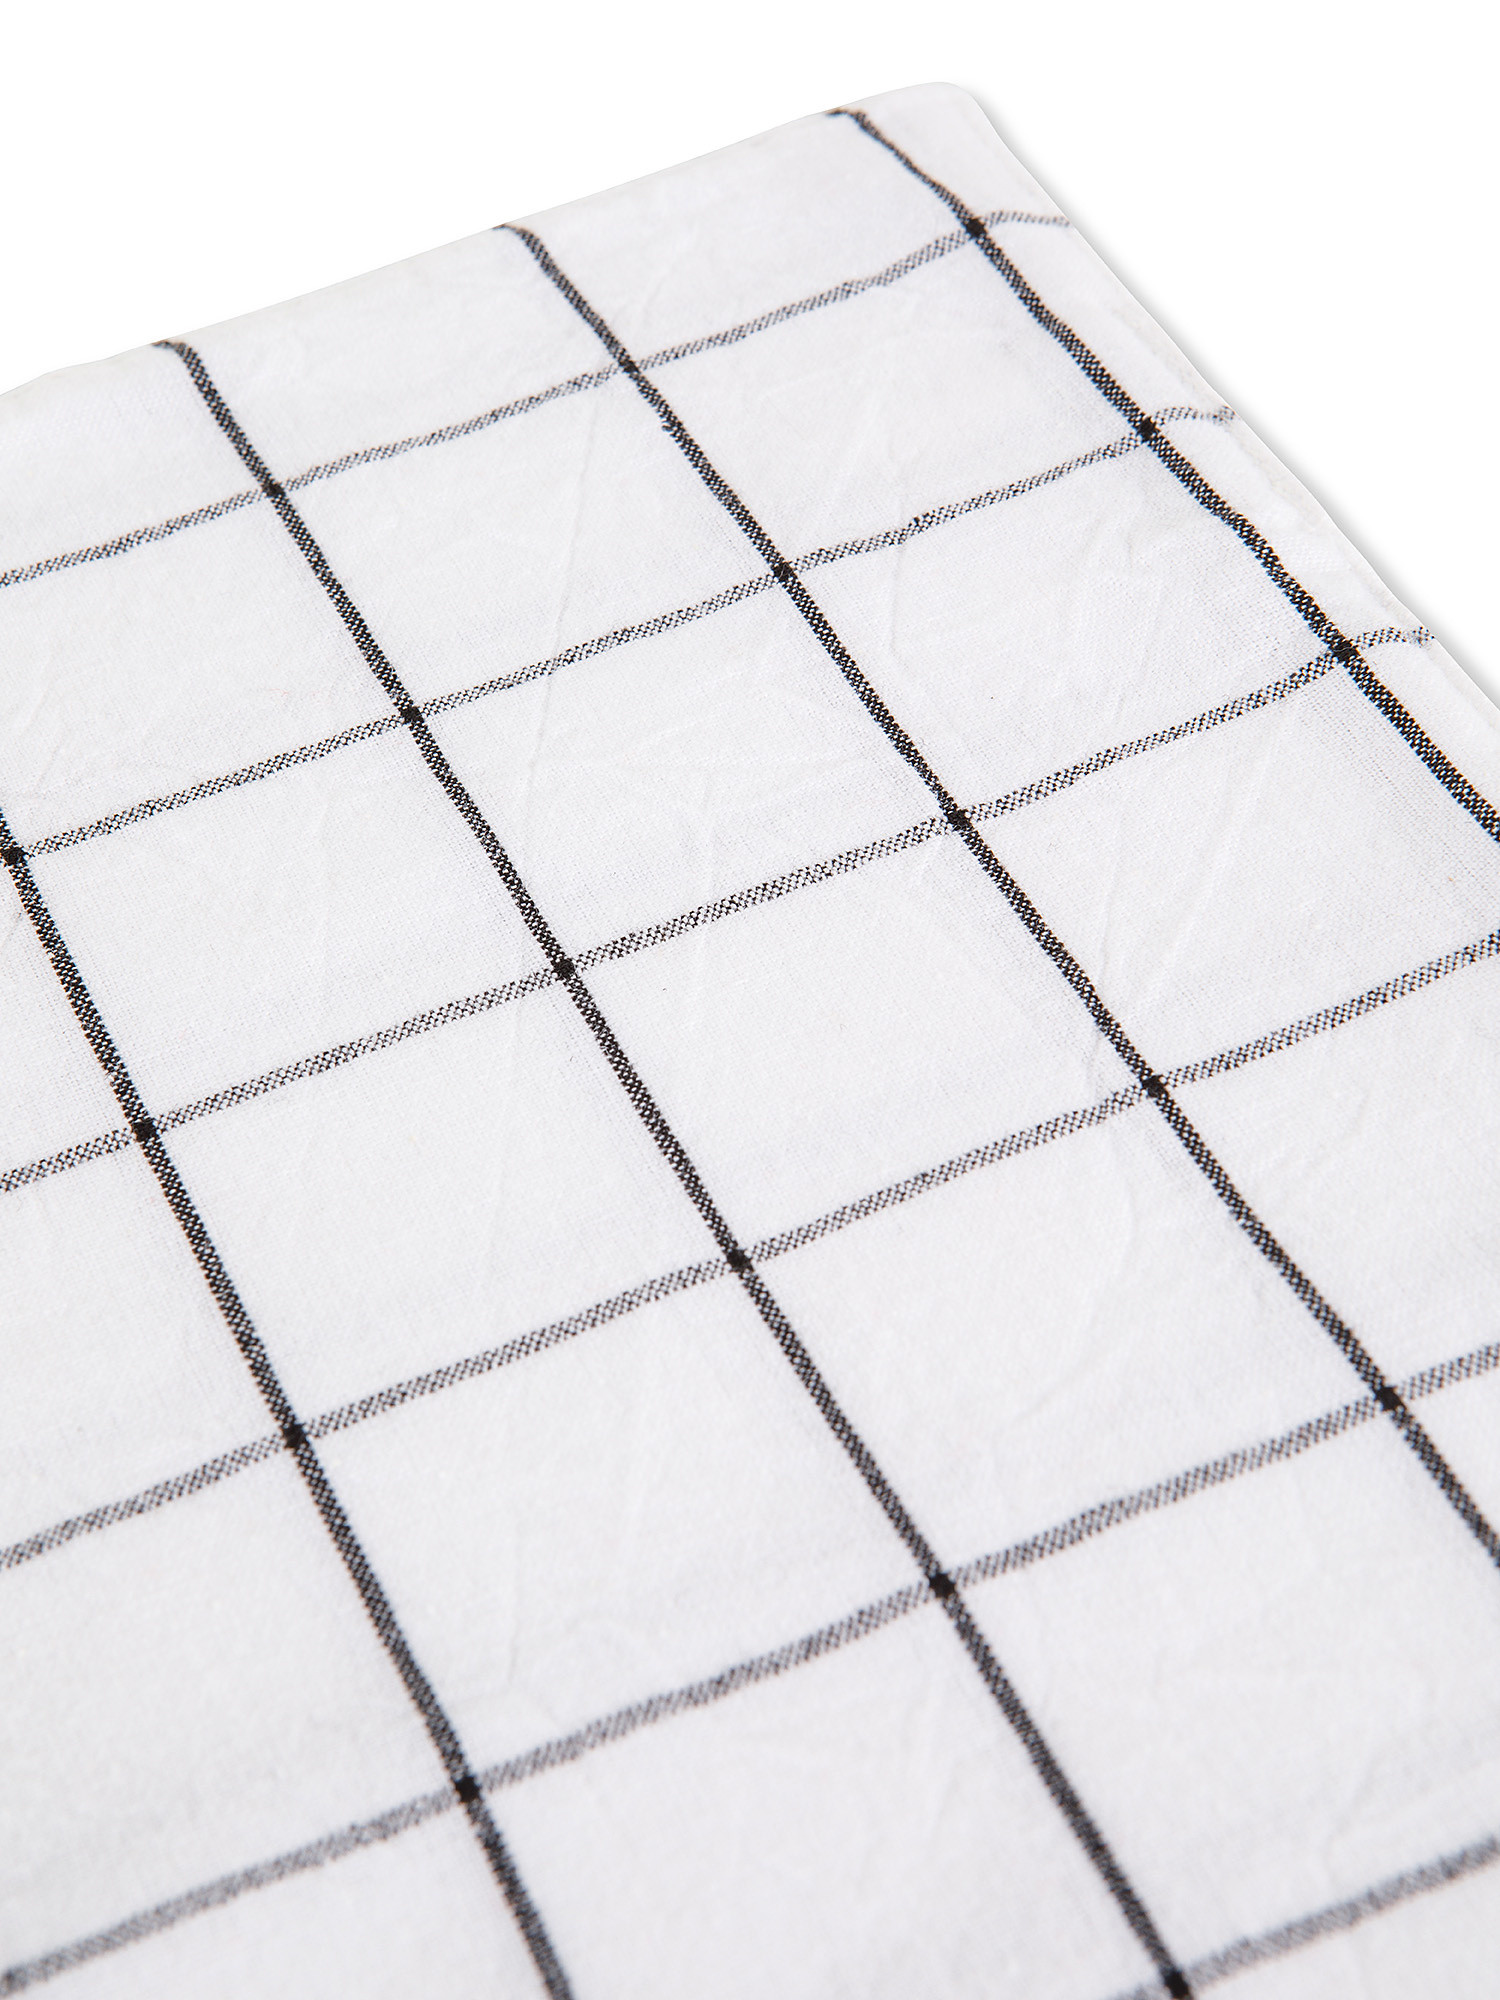 Tovaglietta cotone lavato motivo check, Bianco, large image number 1